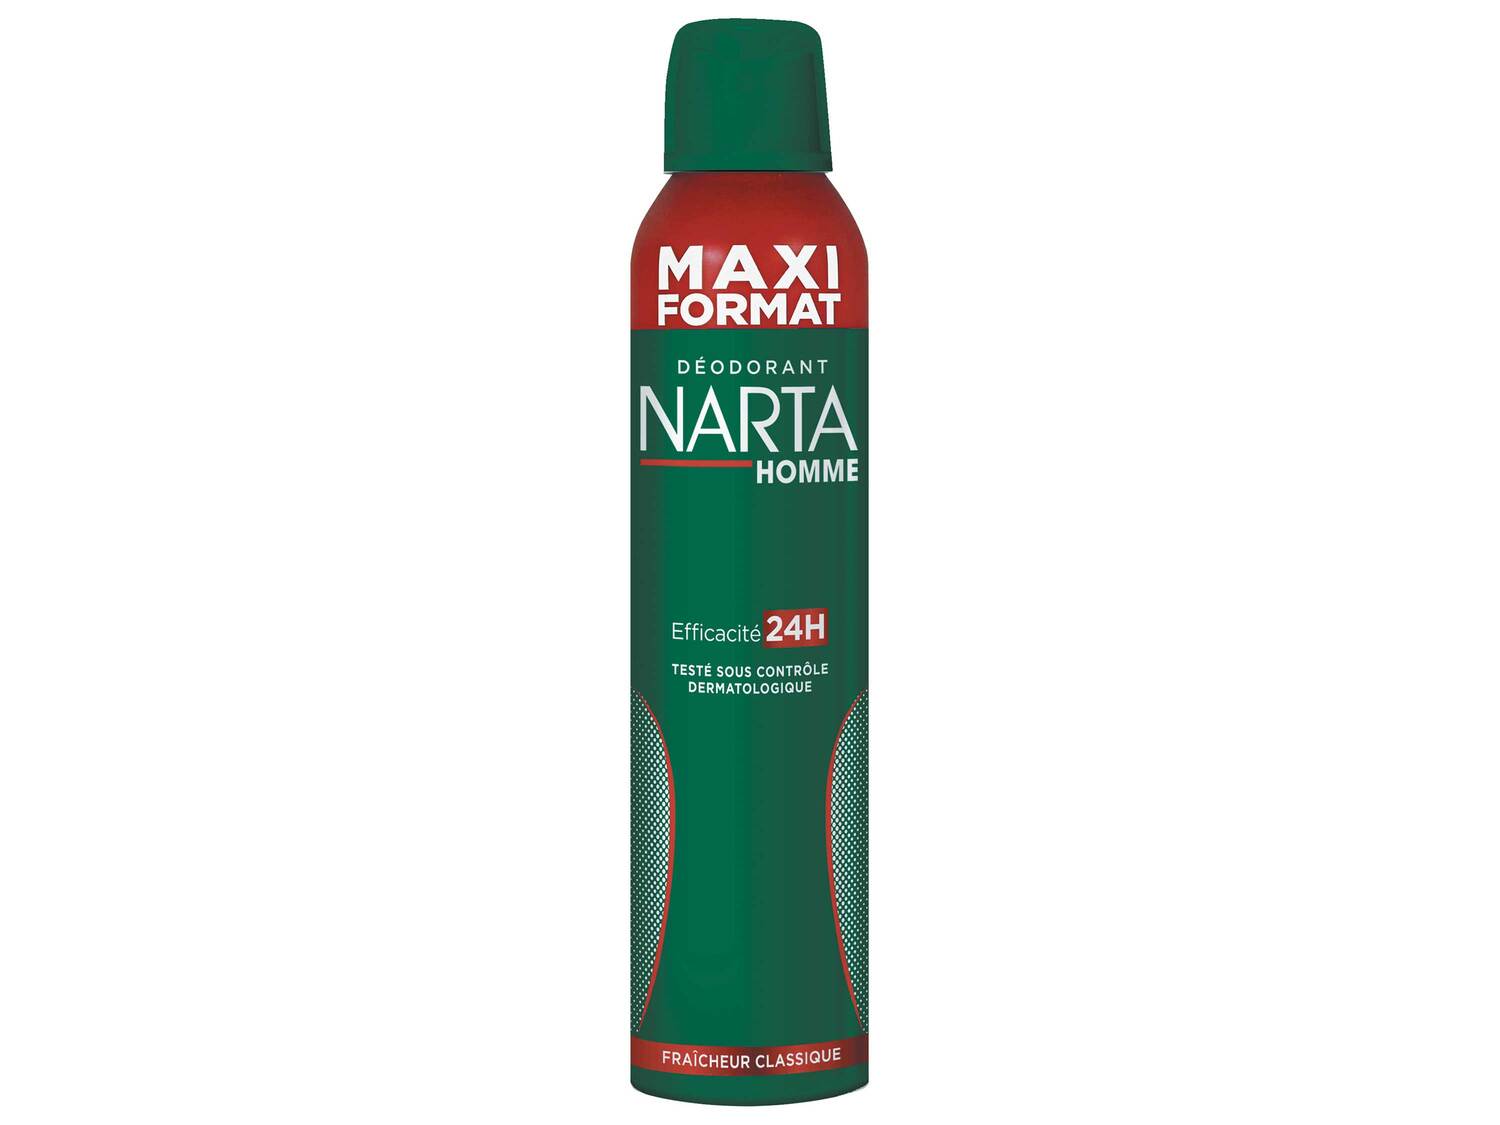 Narta déodorant spray homme , le prix 1.77 &#8364; 
- Le produit de 250 ml ...